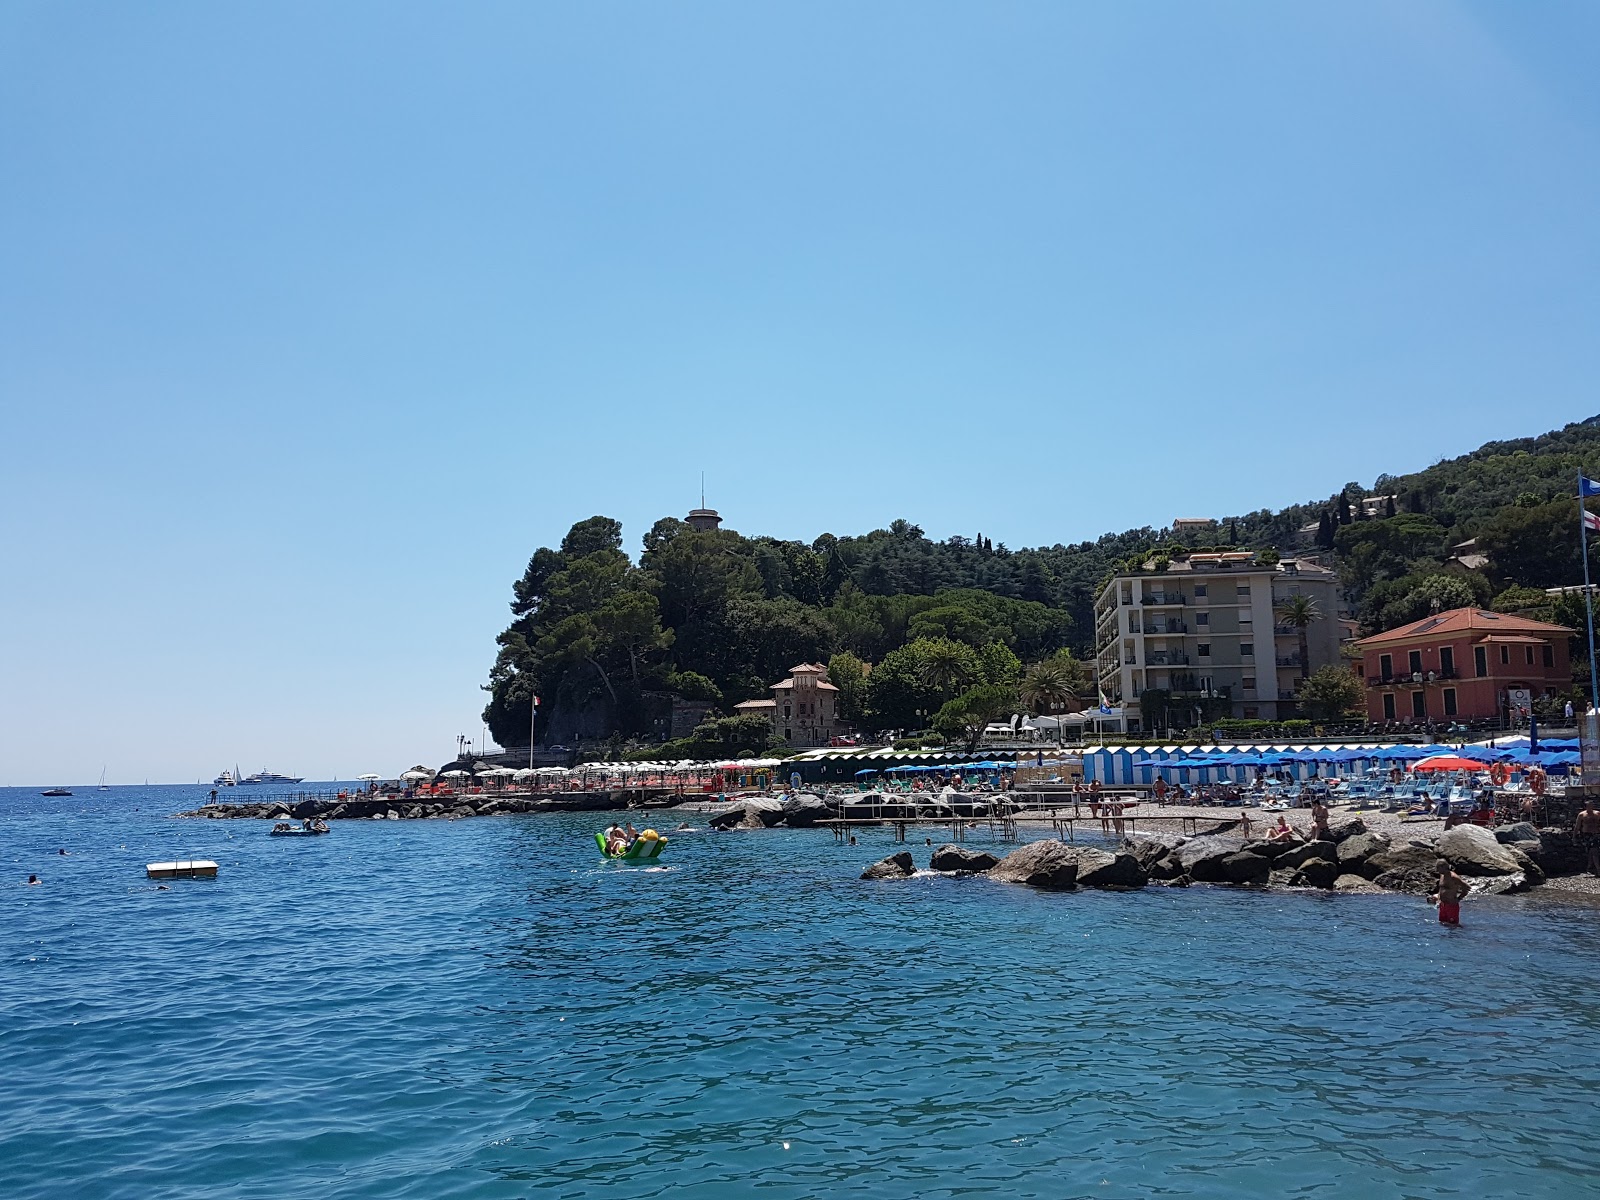 Fotografija Spiaggia Santa Margherita Ligure in naselje